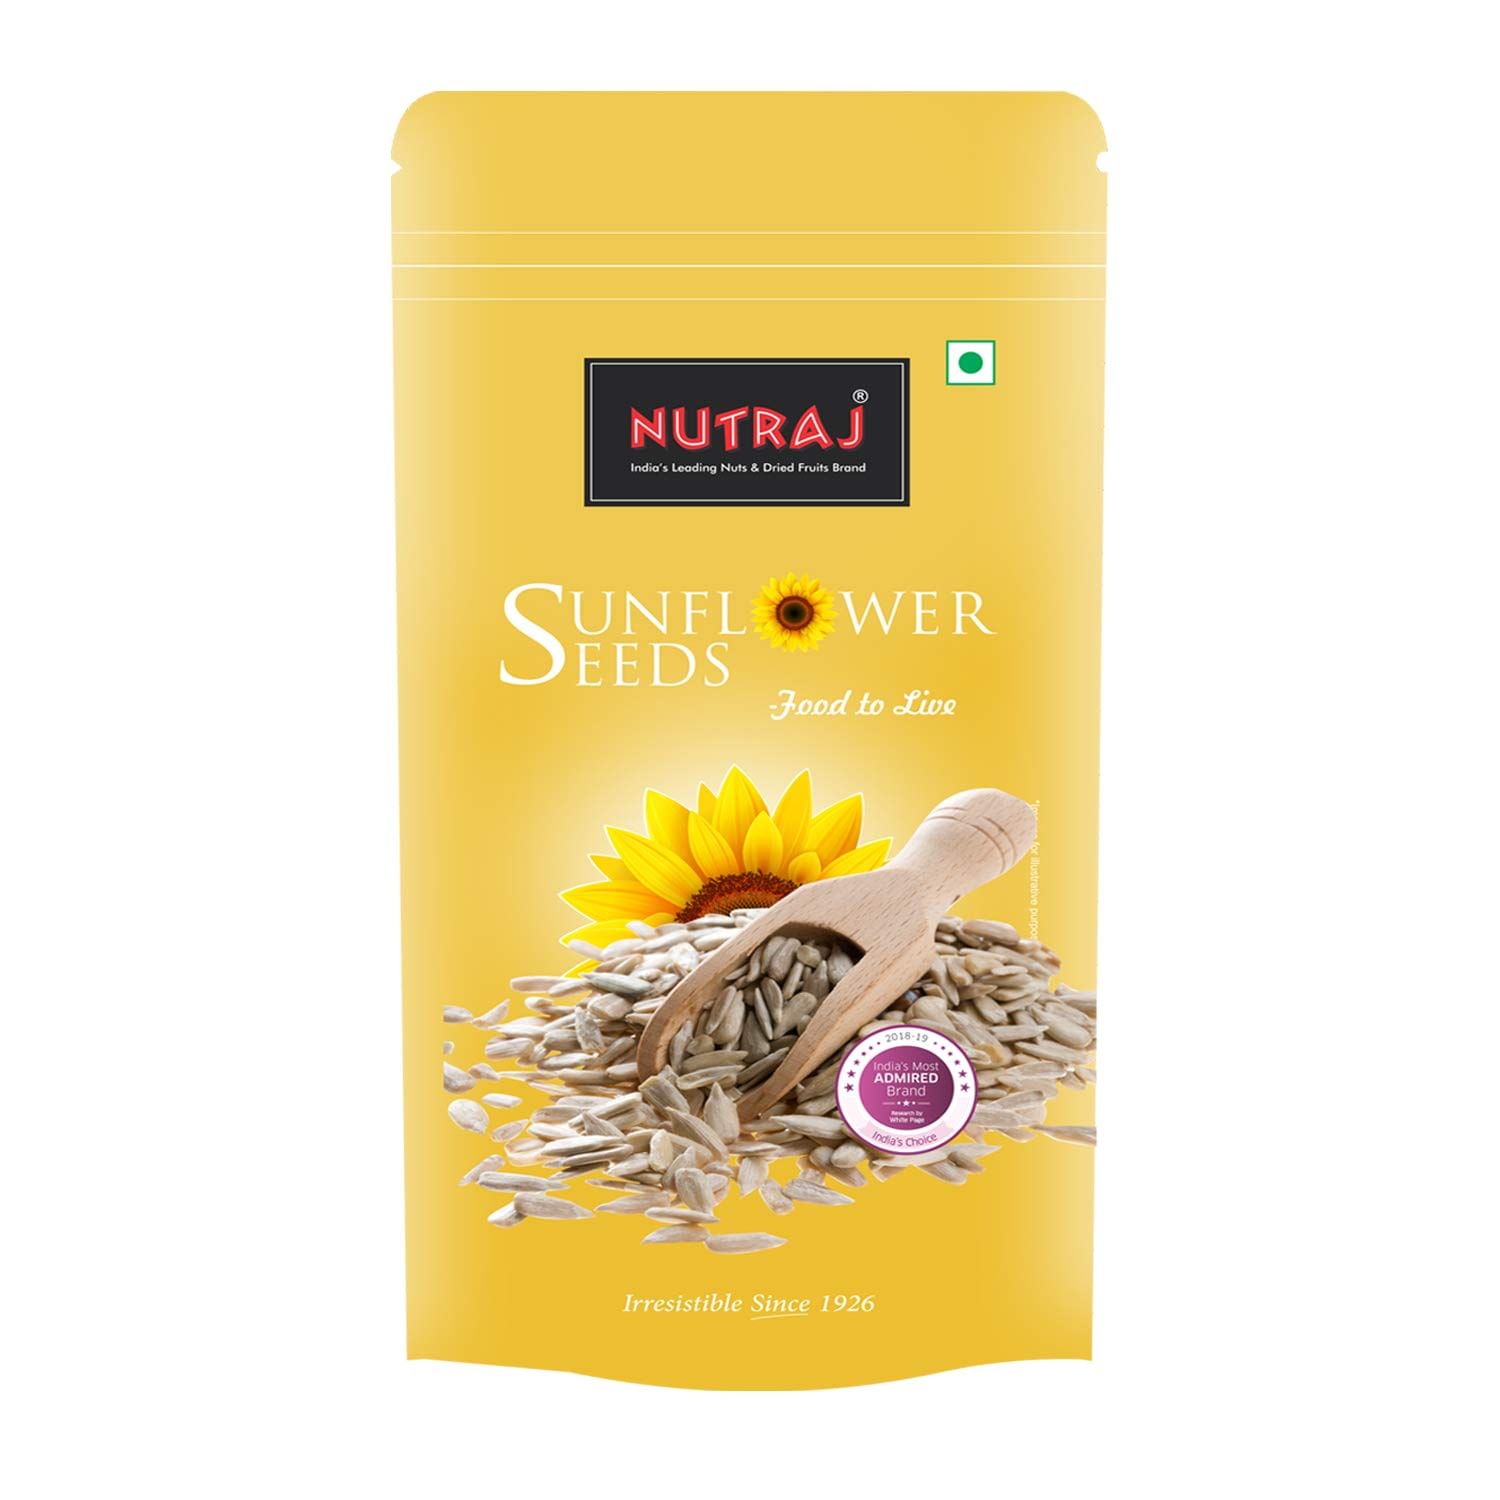 Nutraj Sunflower Seeds 800g (4 X 200g)